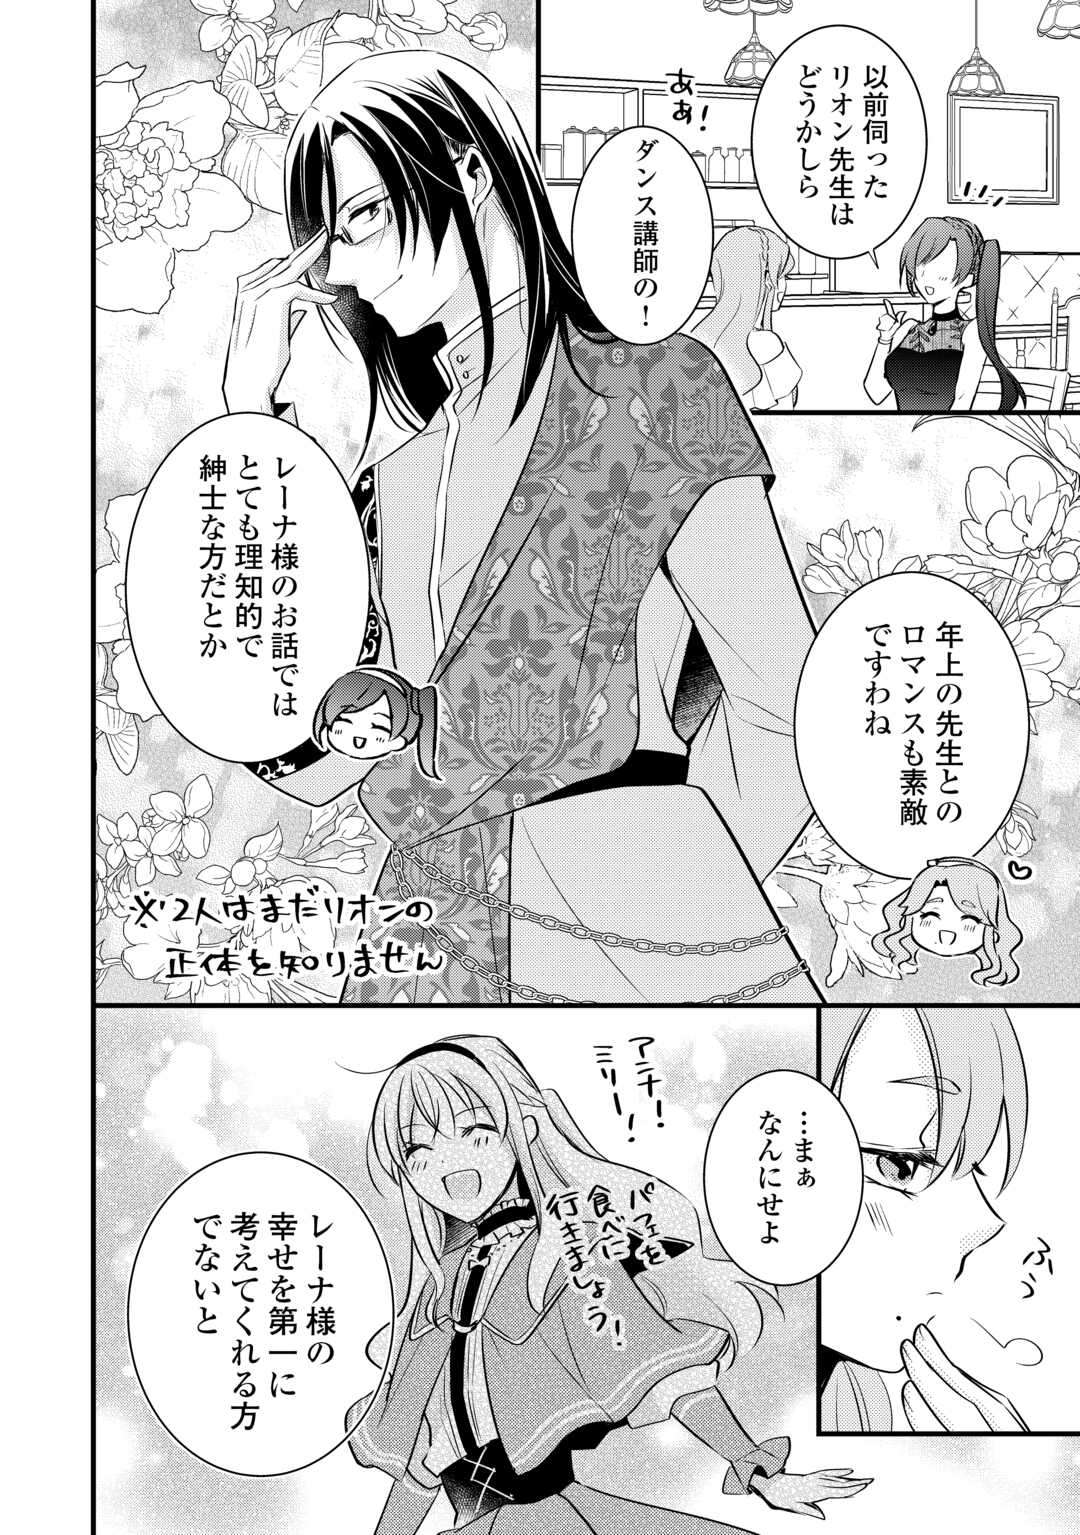 Akuyaku Reijou wa Heroine wo Ijimeteiru Baai de wa Nai - Chapter 19.6 - Page 6